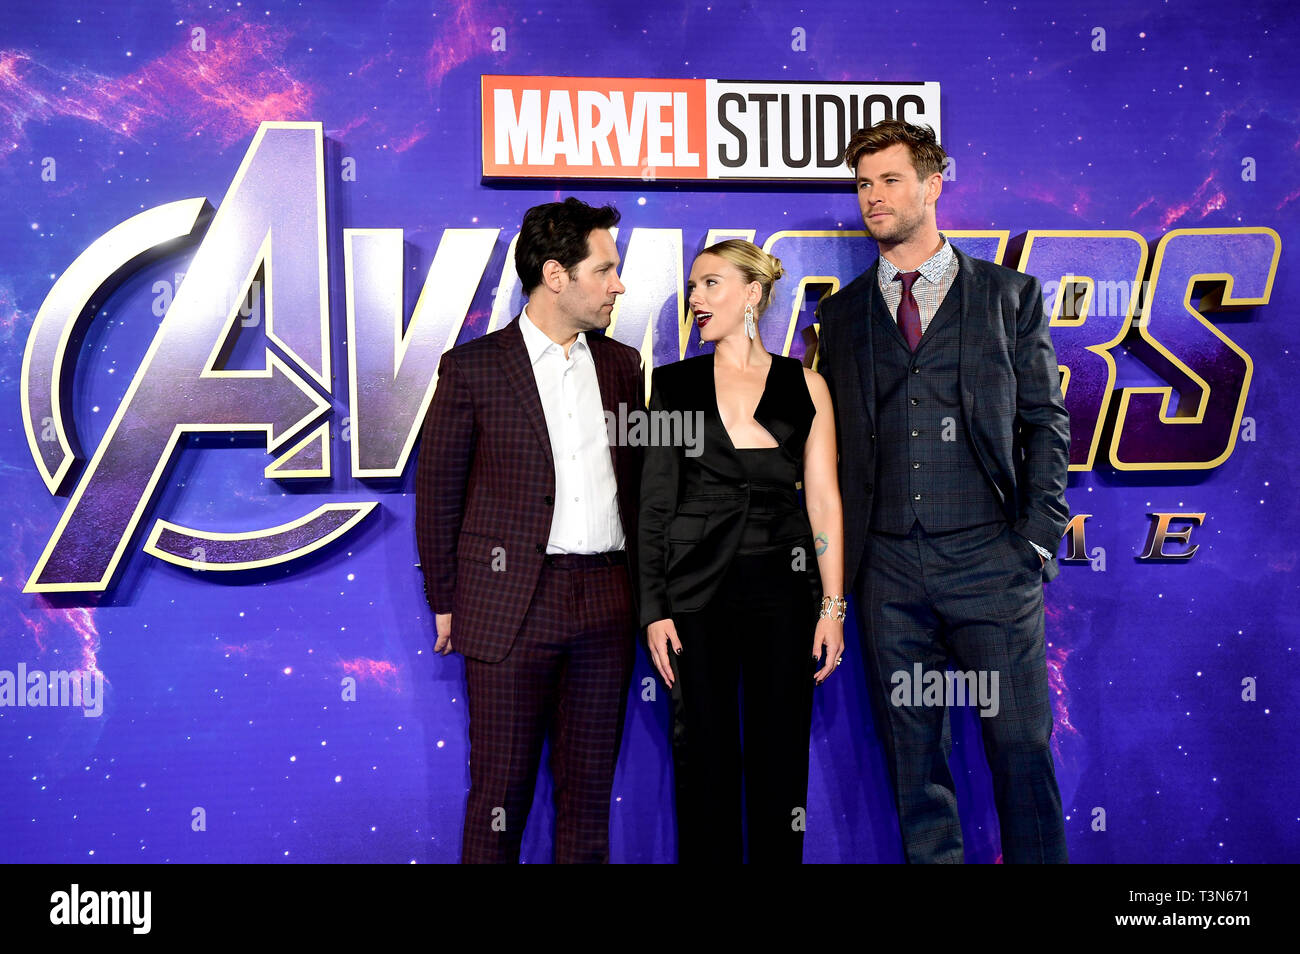 Avengers: Endgame cast members, Paul Rudd, from left, Scarlett